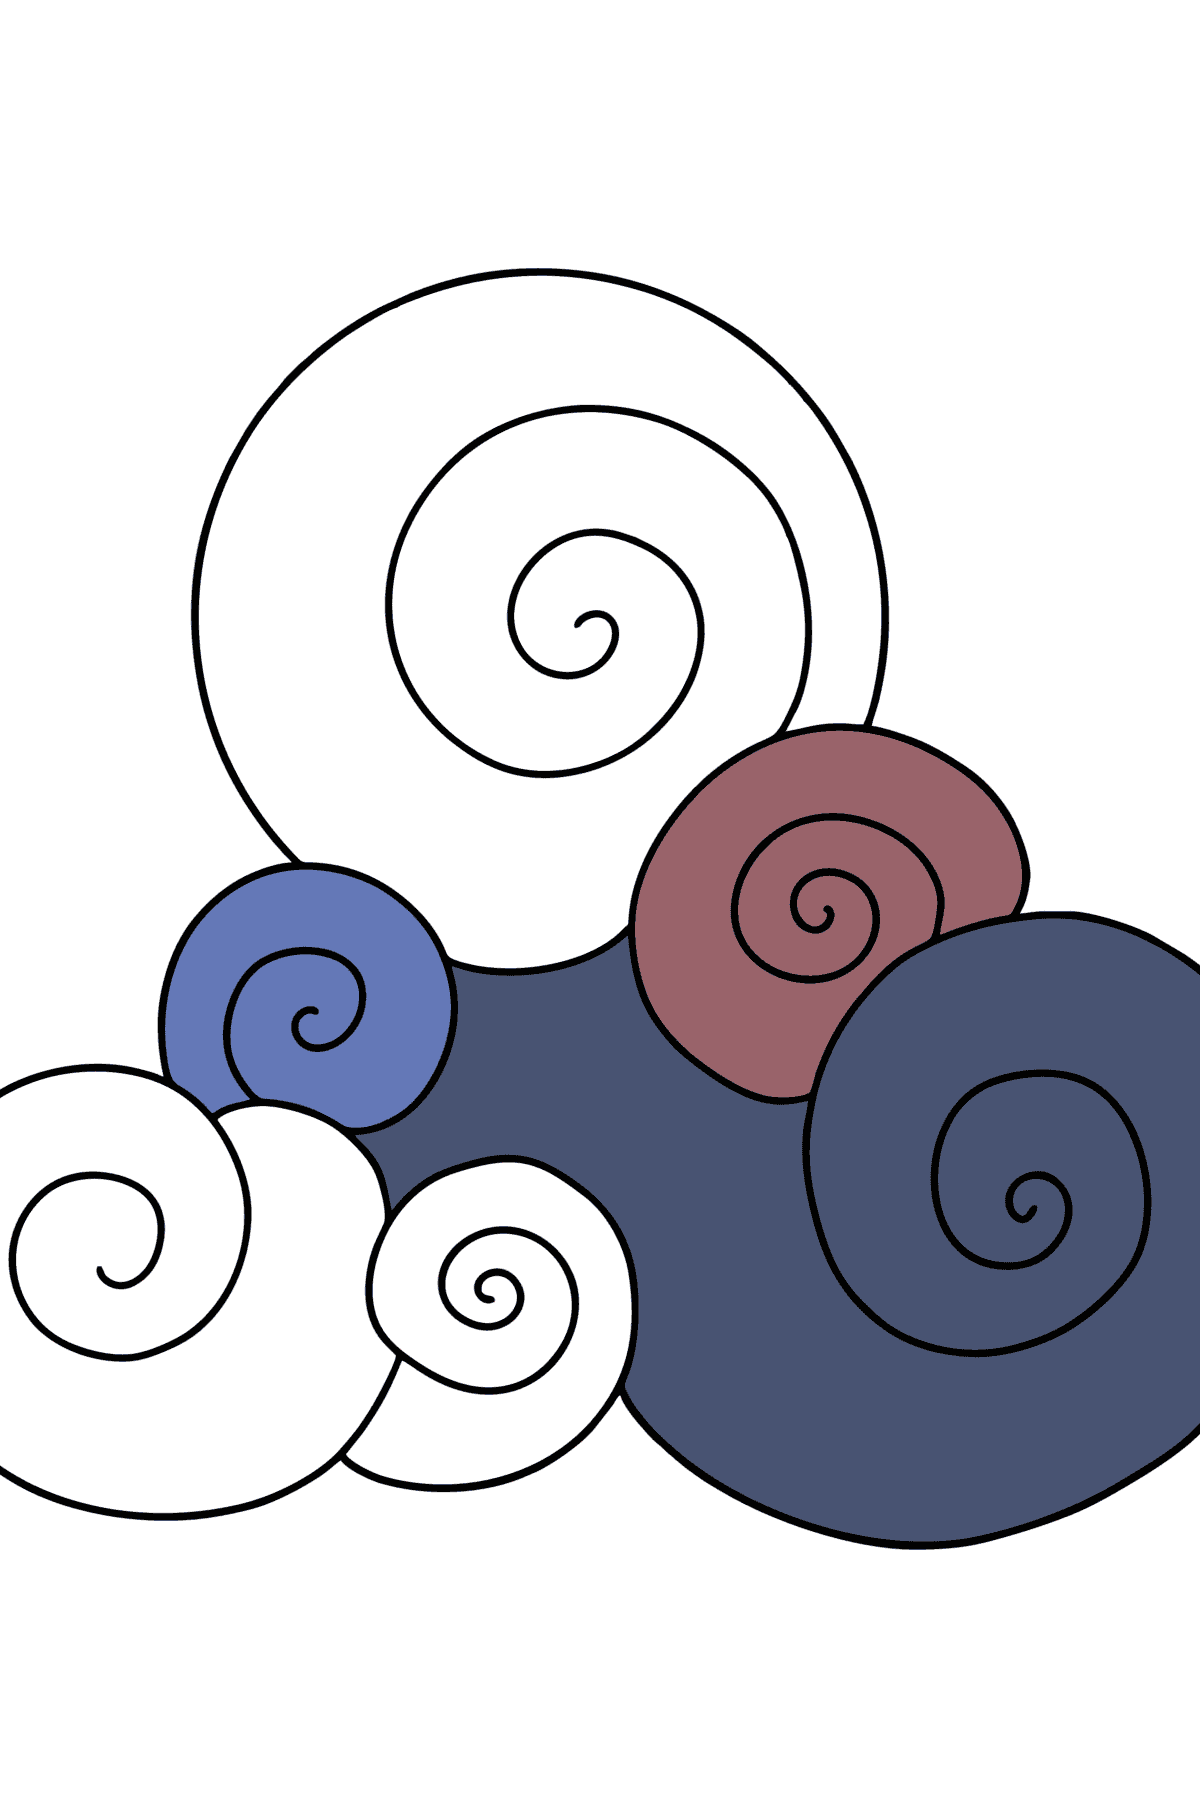 Desenho para colorir de nuvens Zen simples - Imagens para Colorir para Crianças